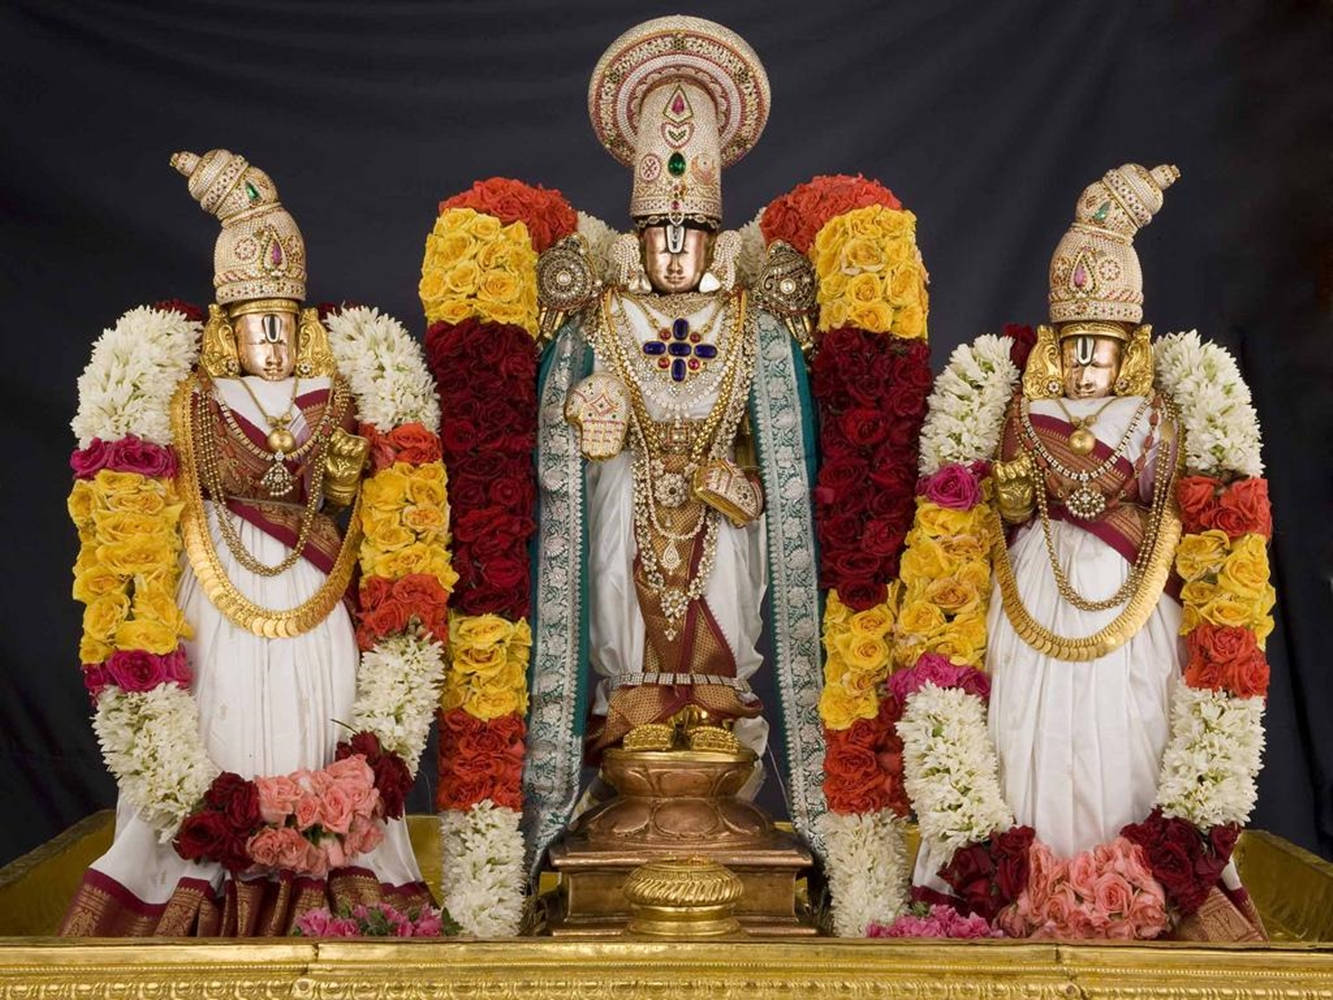 Venkateswara Swamy Deities Of Vishnu